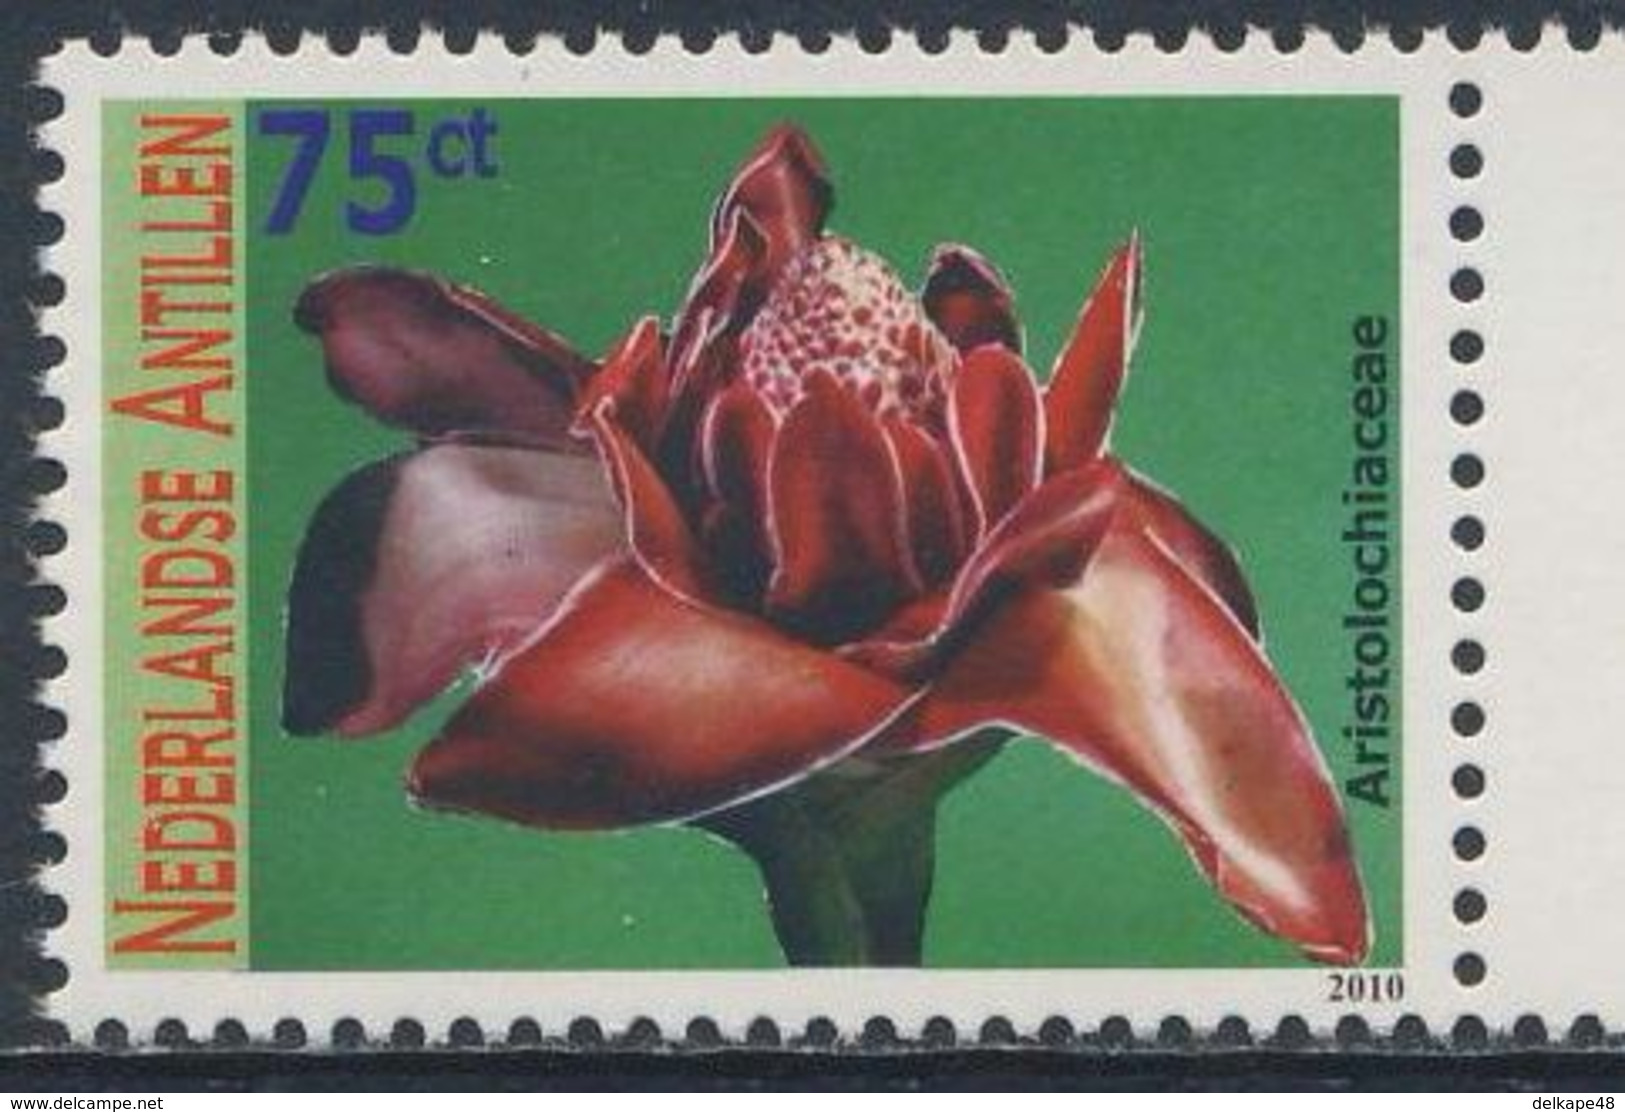 Nederlandse Antillen 2010 Mi 1804 ** Aristolochiaceae : Birthwort Family / Osterluzeigewächs - Flowers / Blumen / Blüten - Giftige Pflanzen